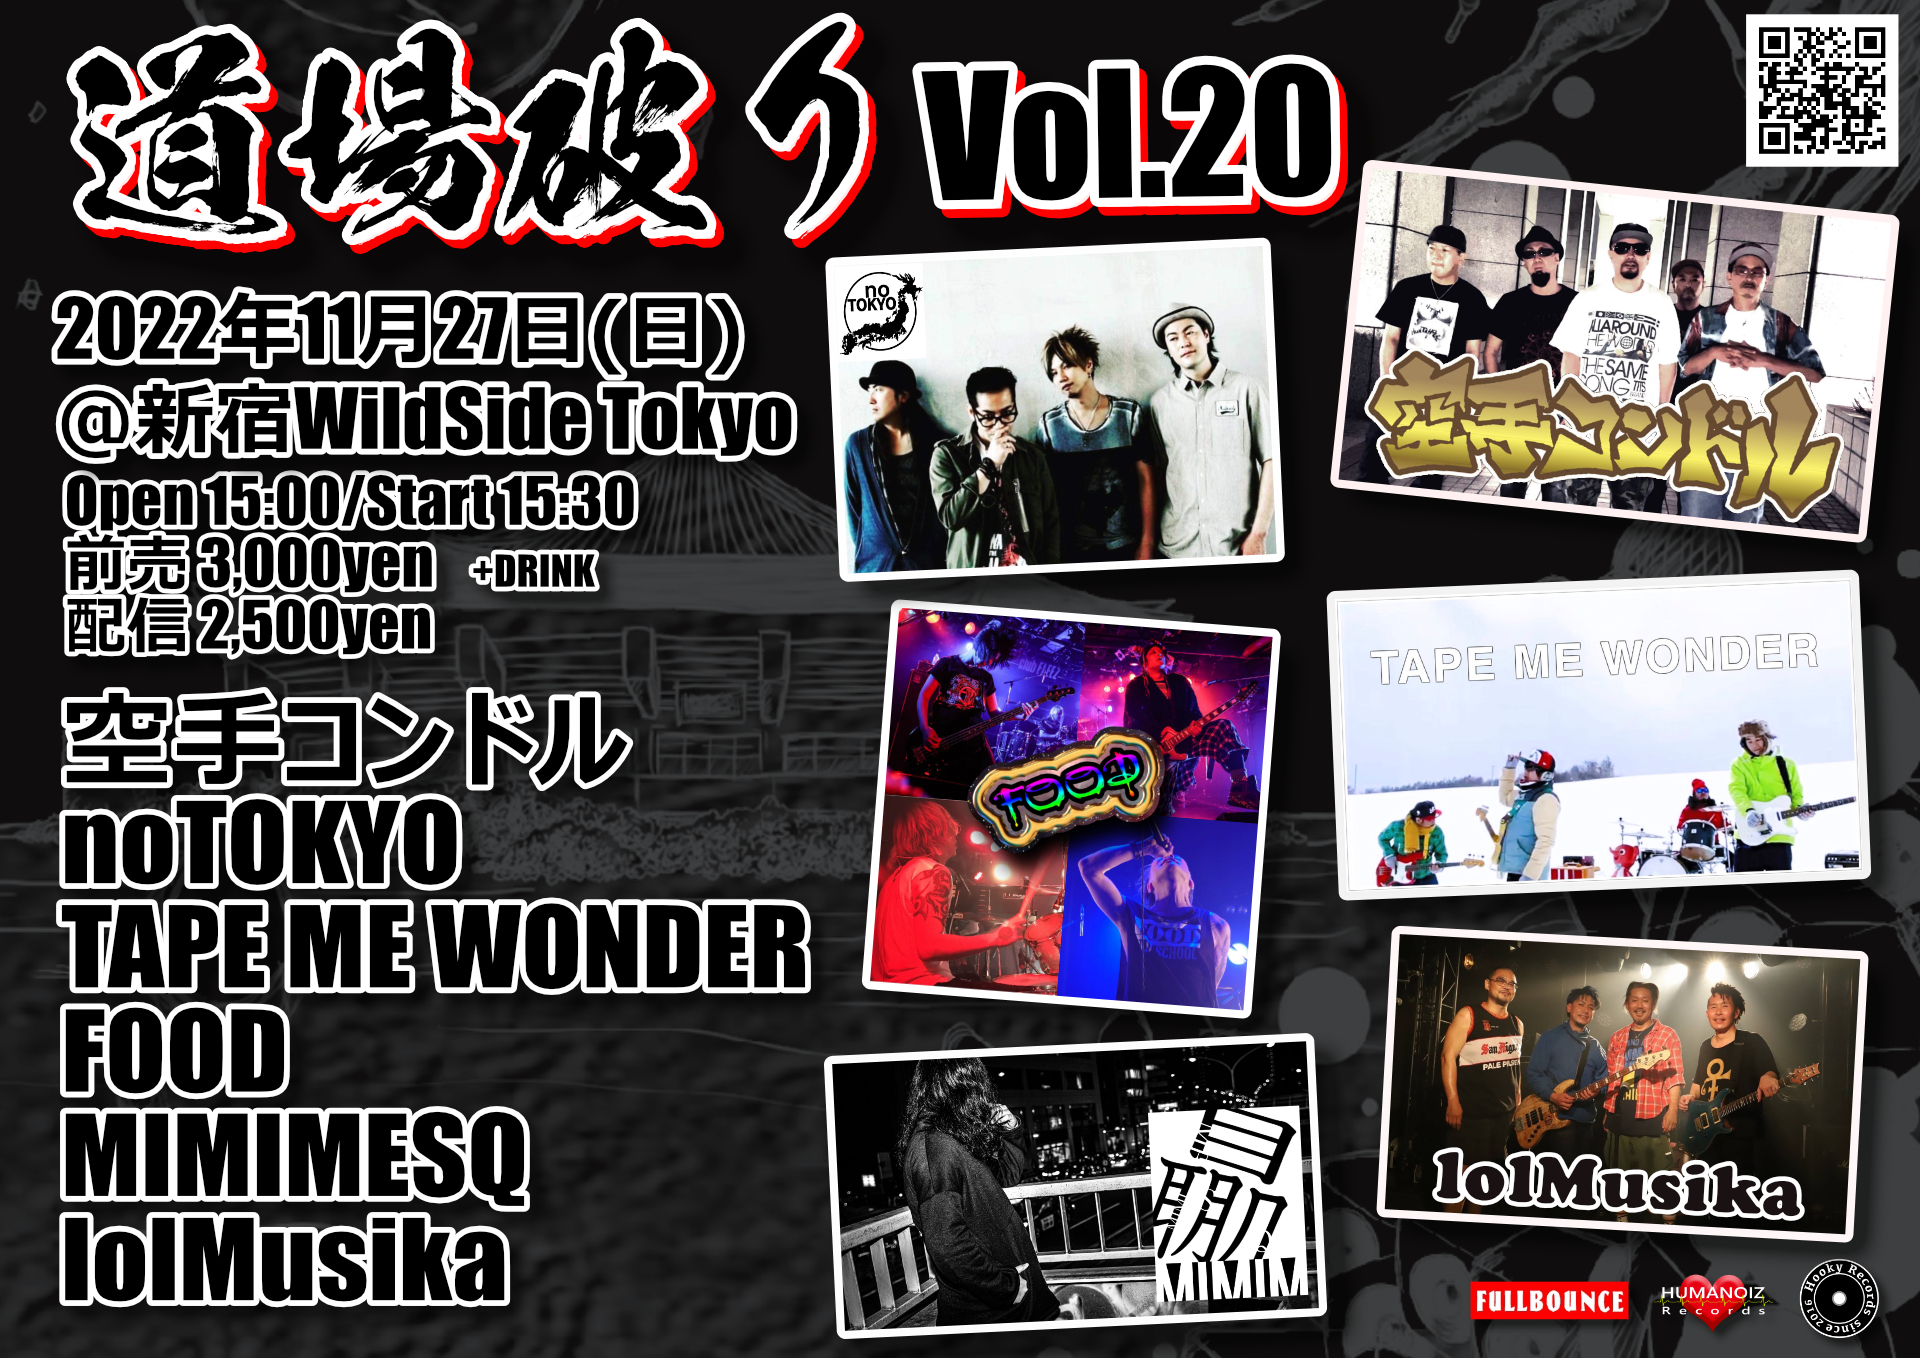 2022/11/27 [道場破り Vol.20] 新宿Wildside Tokyo